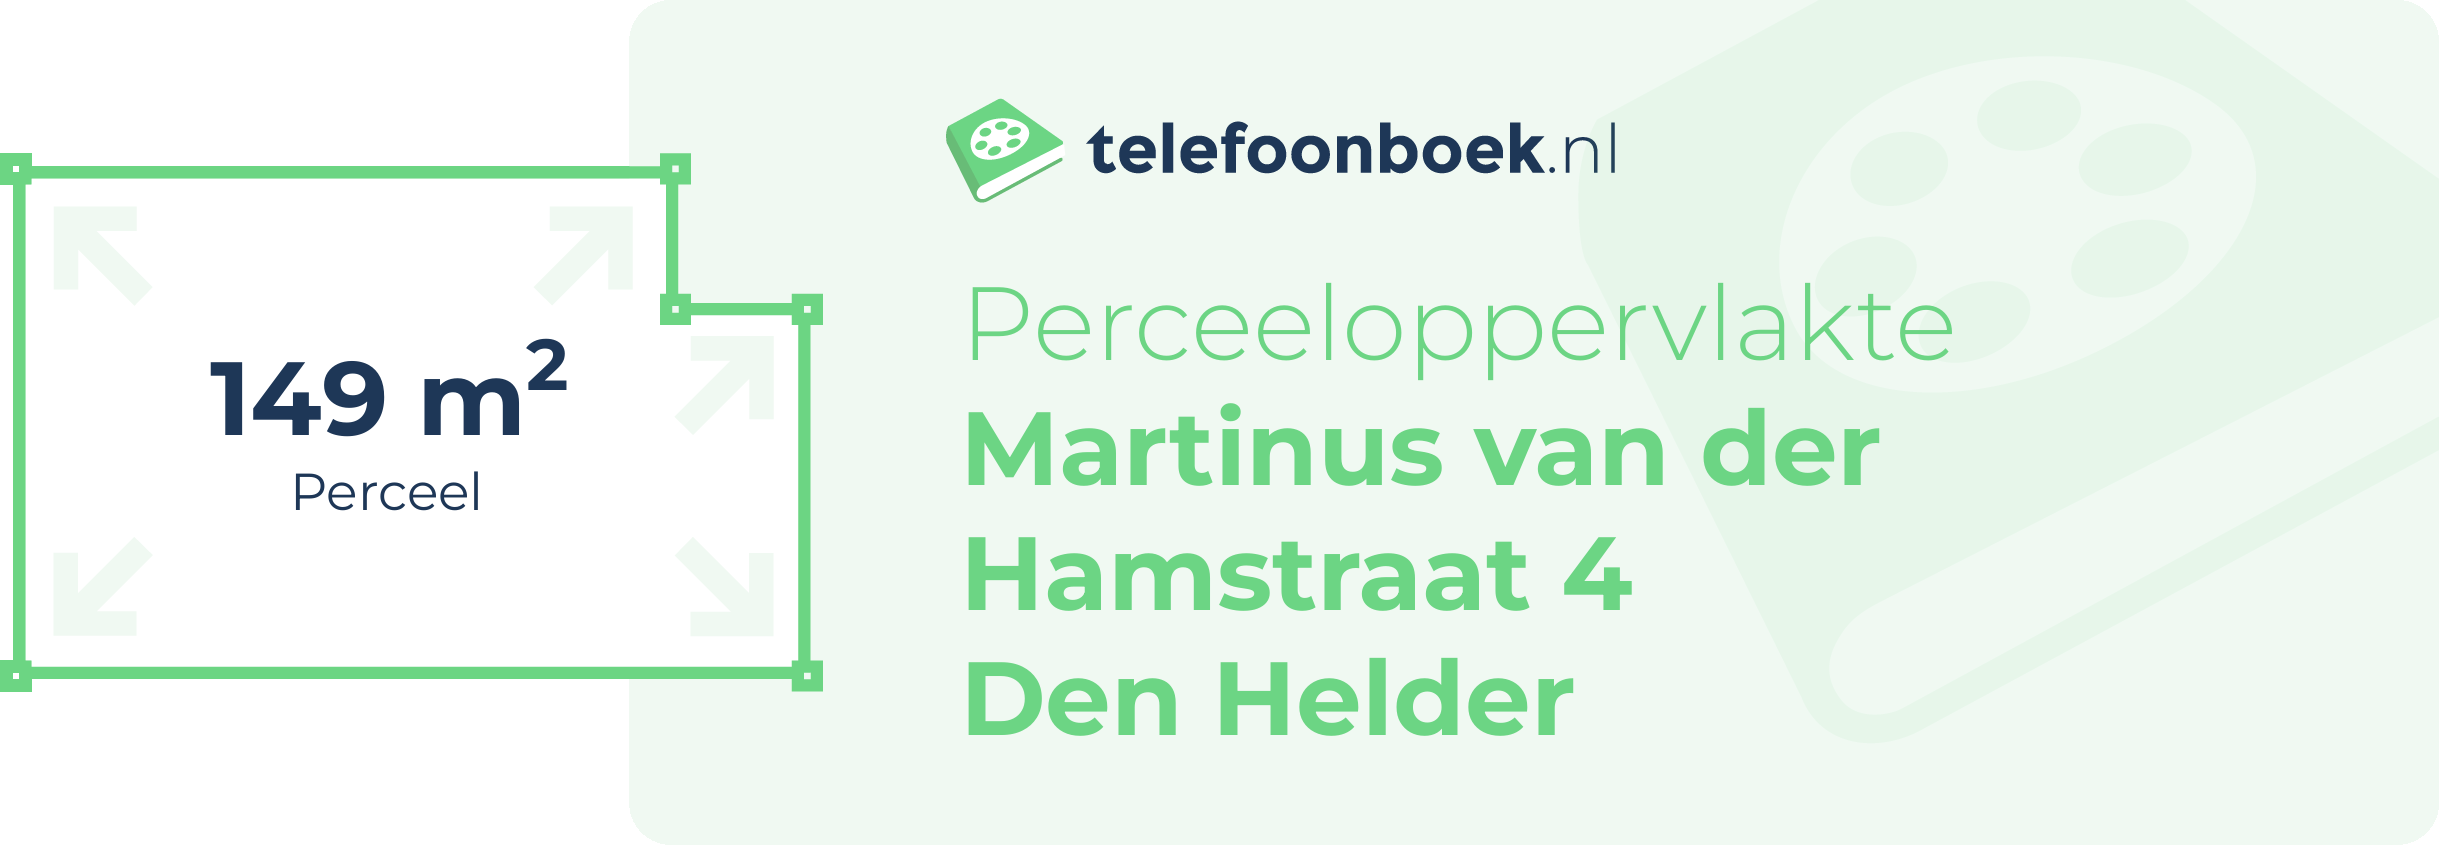 Perceeloppervlakte Martinus Van Der Hamstraat 4 Den Helder